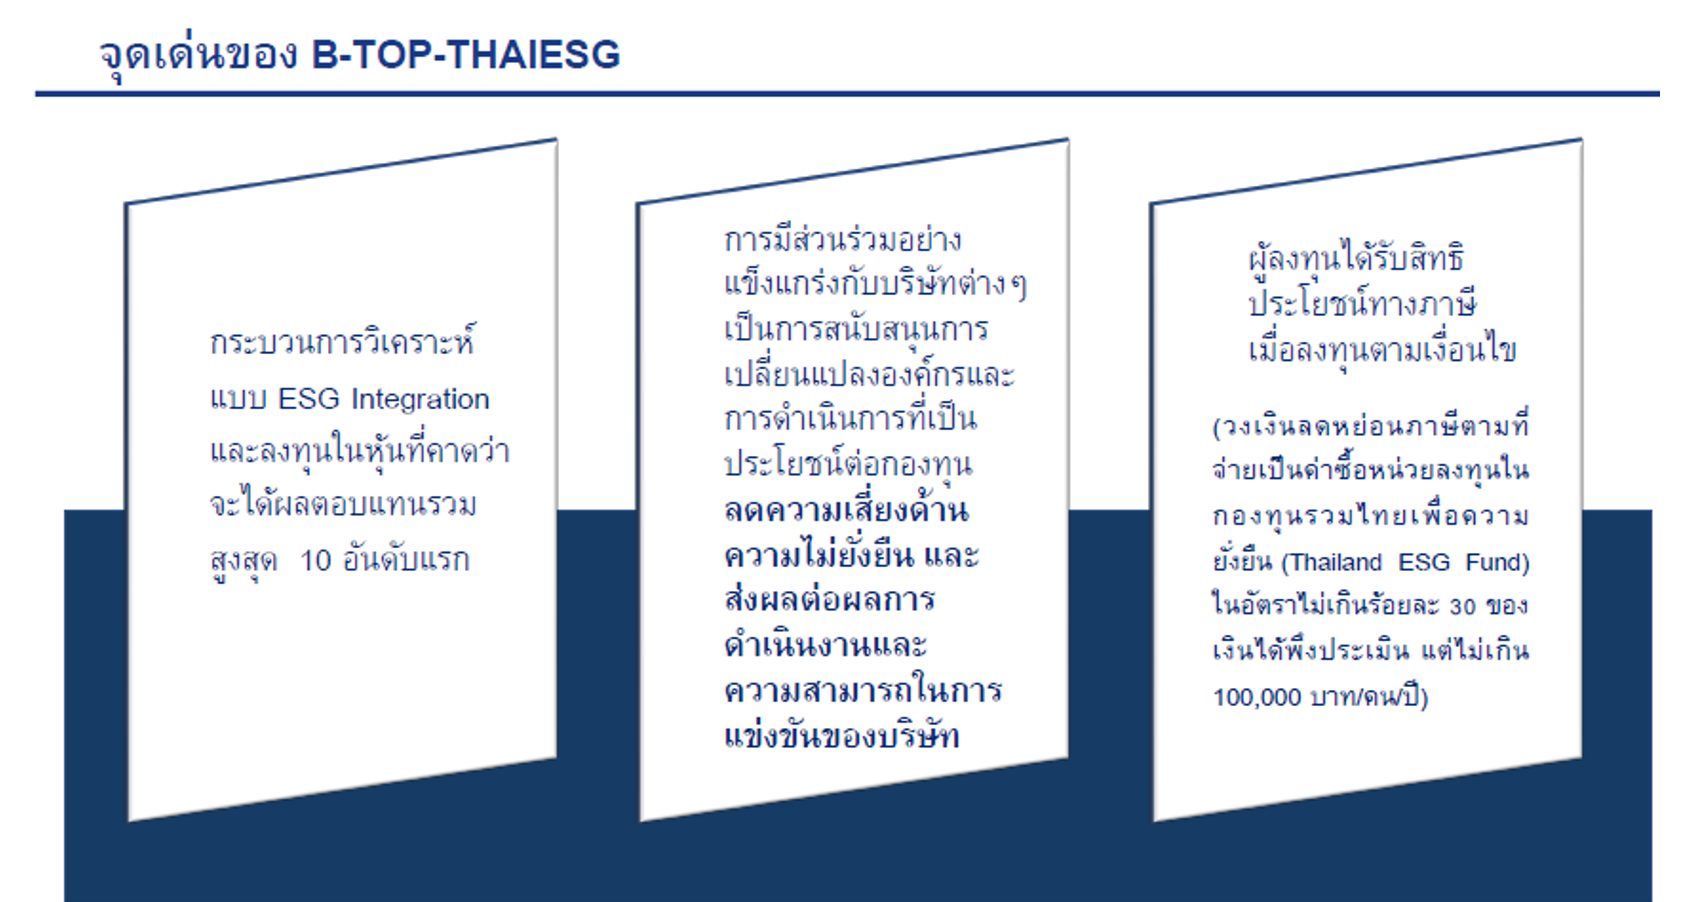 สรุปไลฟ์ “เจาะลึก B-TOP-THAIESG กองทุนรวมบัวหลวงทศพลไทยเพื่อความยั่งยืน” I สรุป LIVE Market Talk